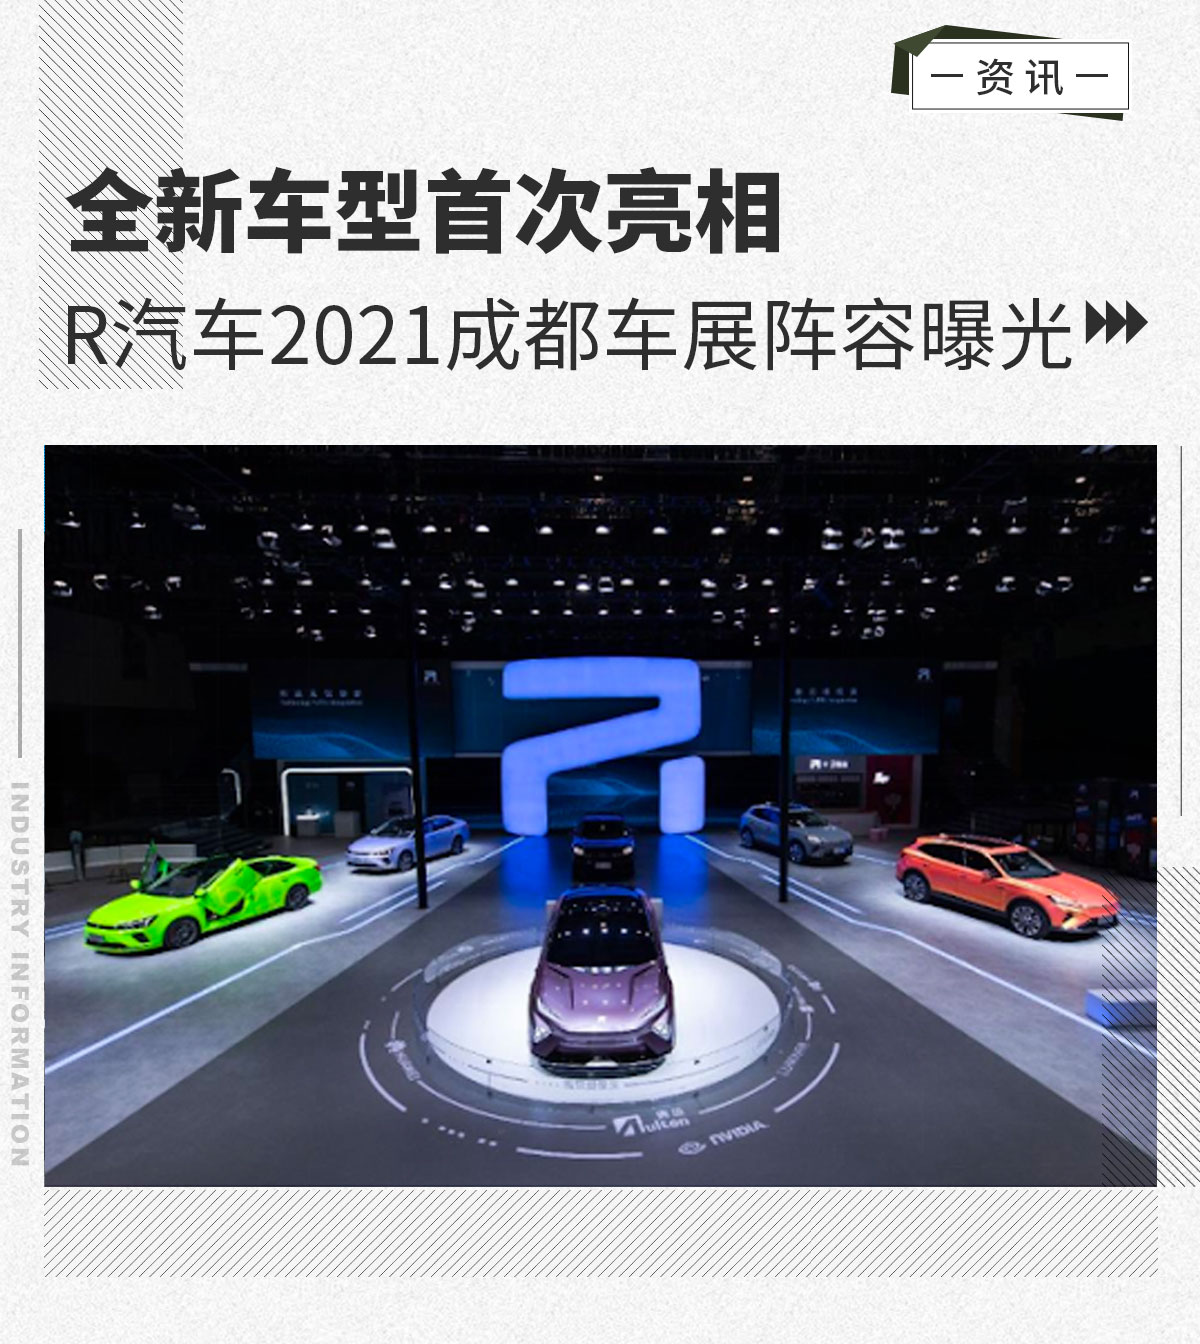 全新车型首次亮相 R汽车2021成都车展阵容曝光